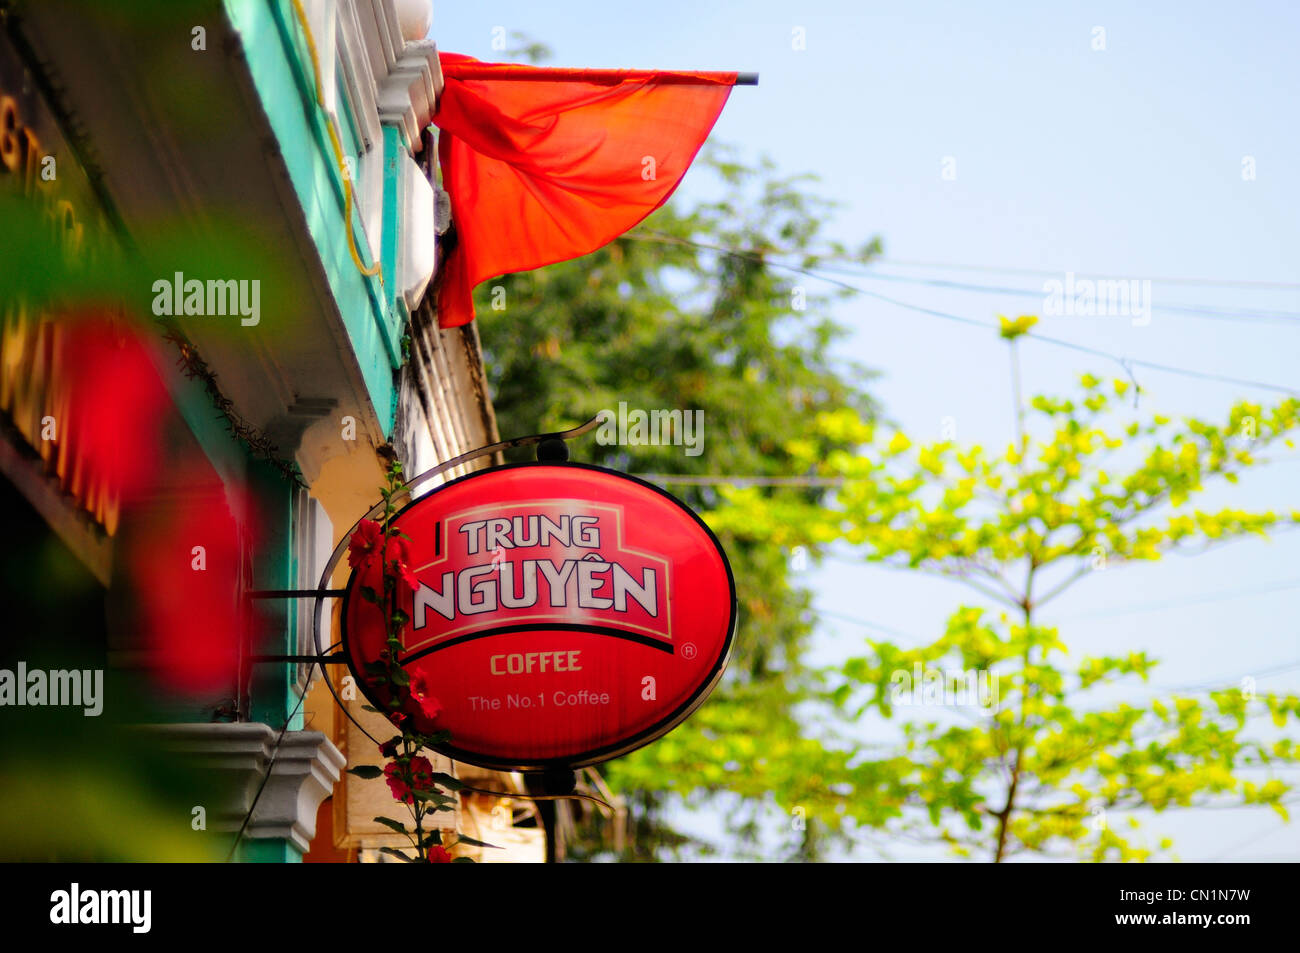 Melden Sie für Trung Nguyen Kaffee auf der vietnamesischen Kaffee shop Stockfoto